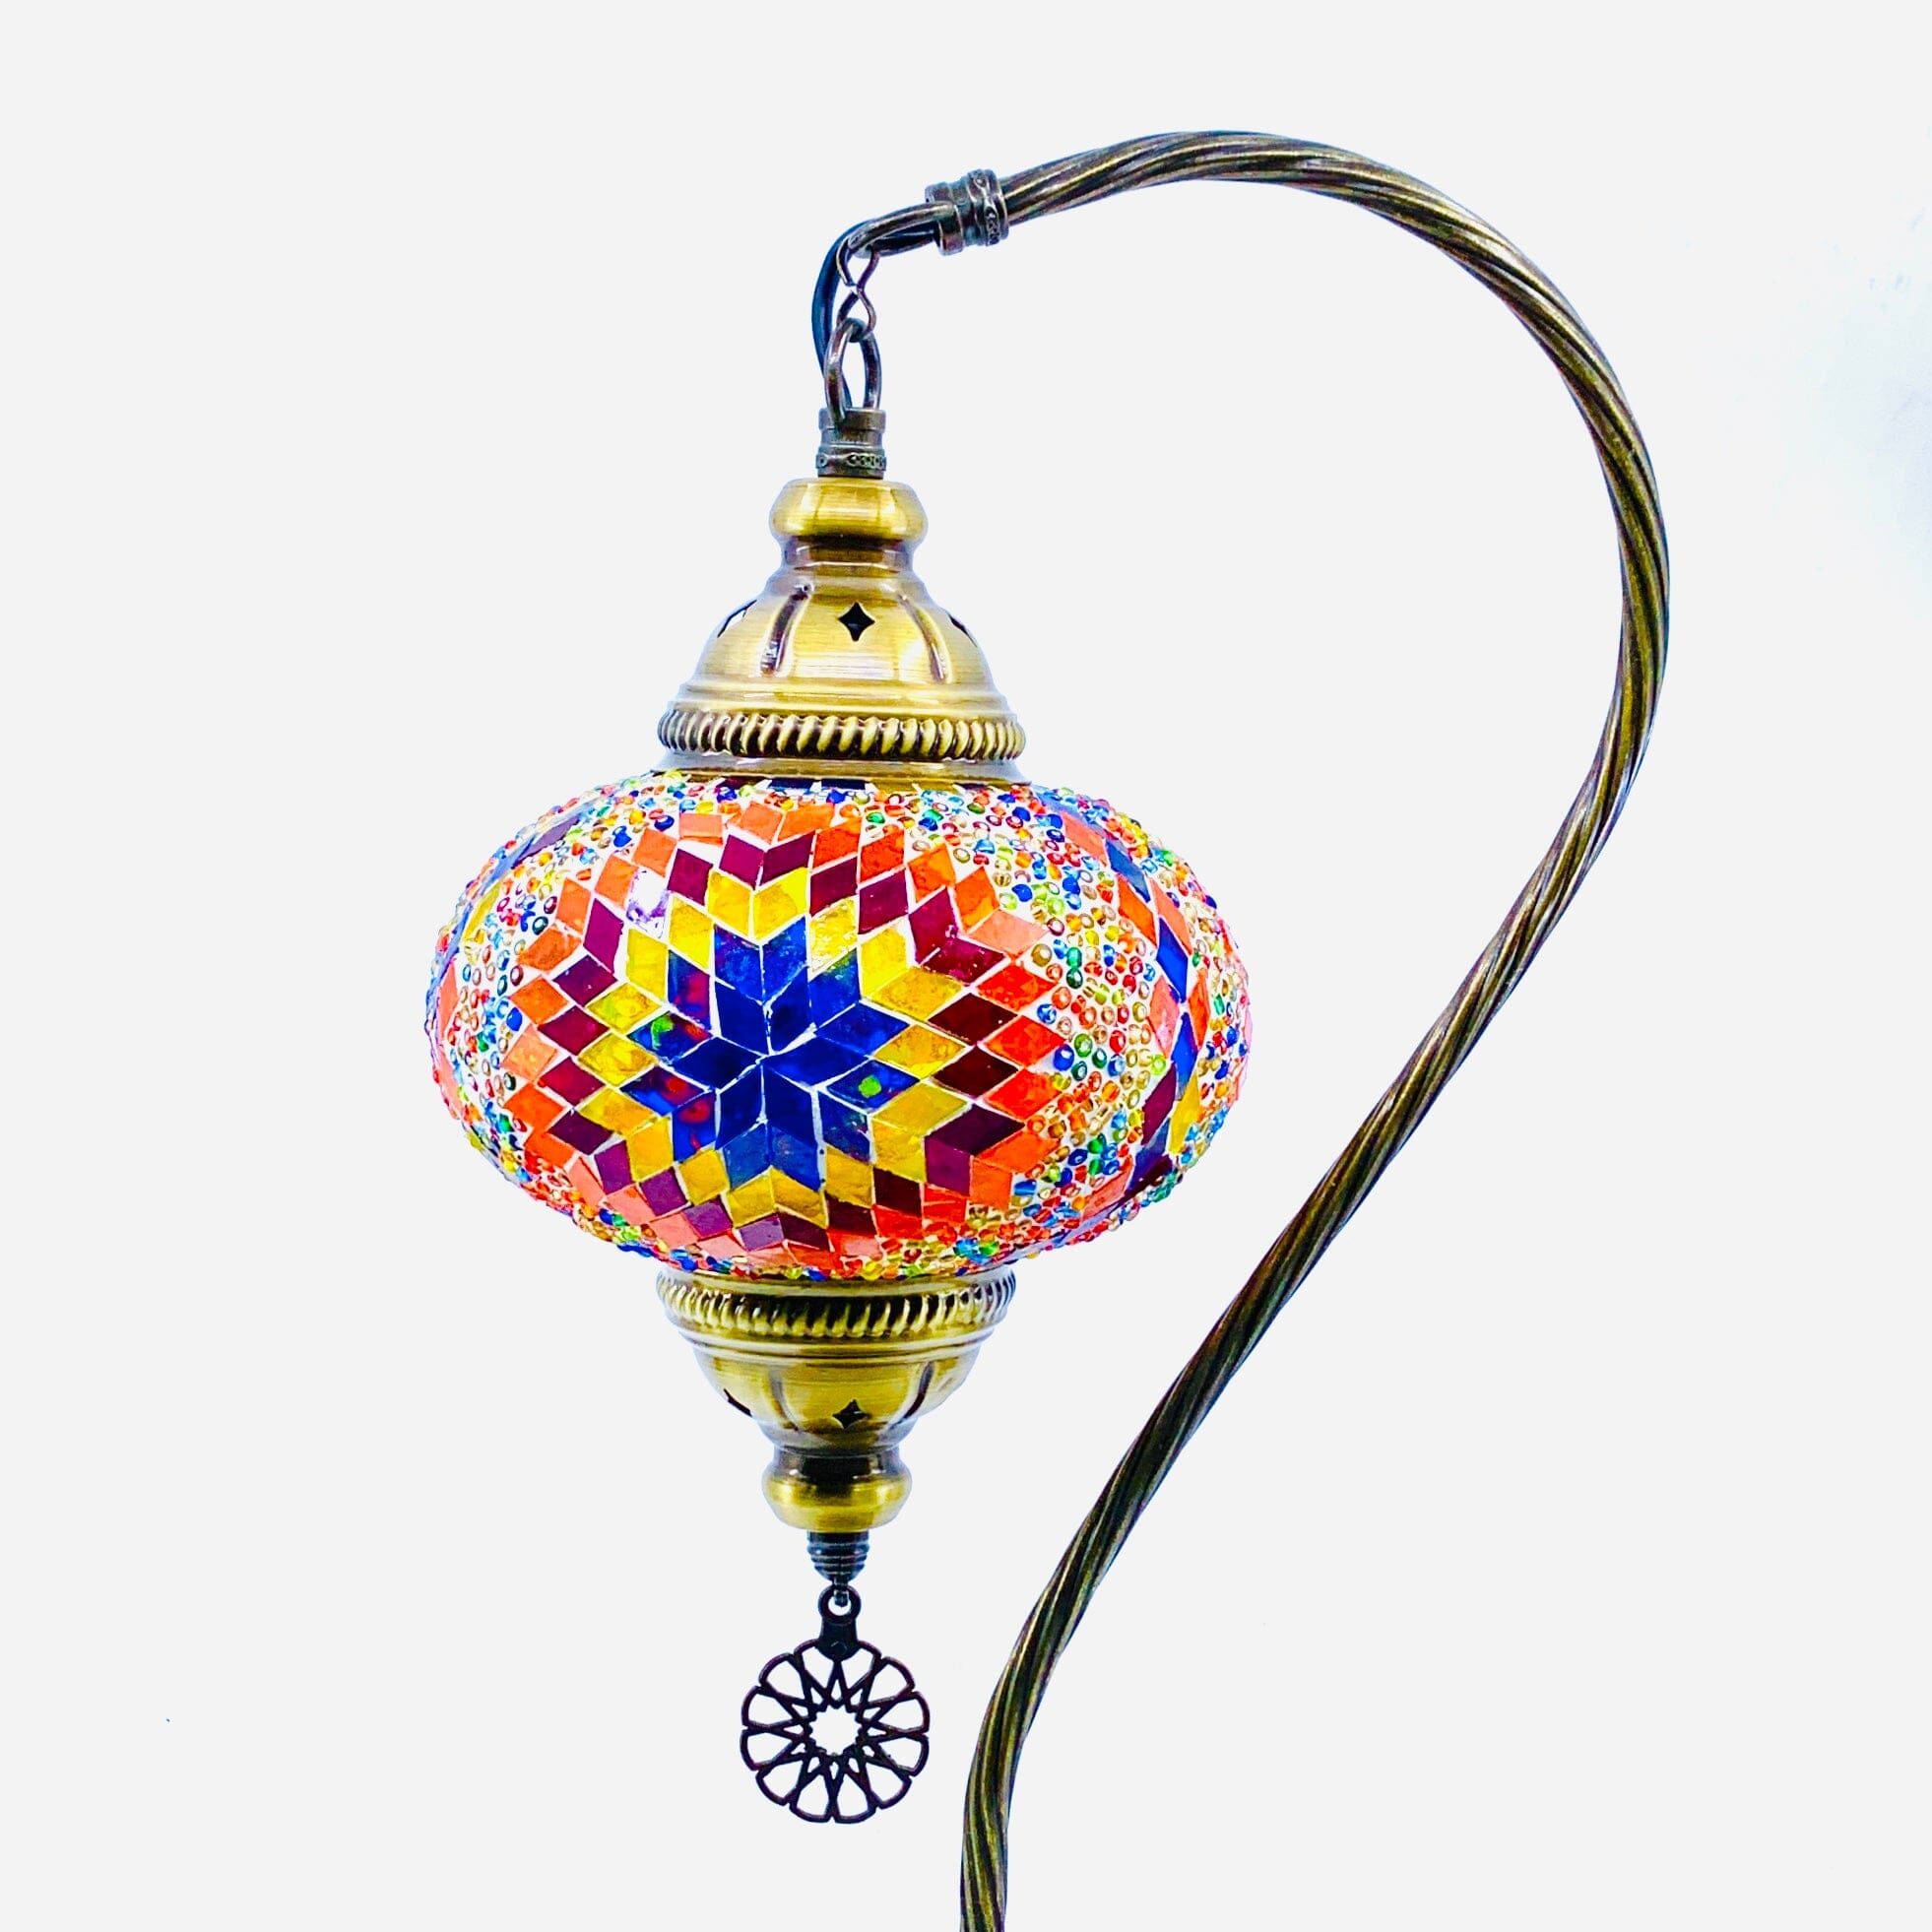 Half Heart Turkish Mosaic Lamp, 1 Decor Natto USA 